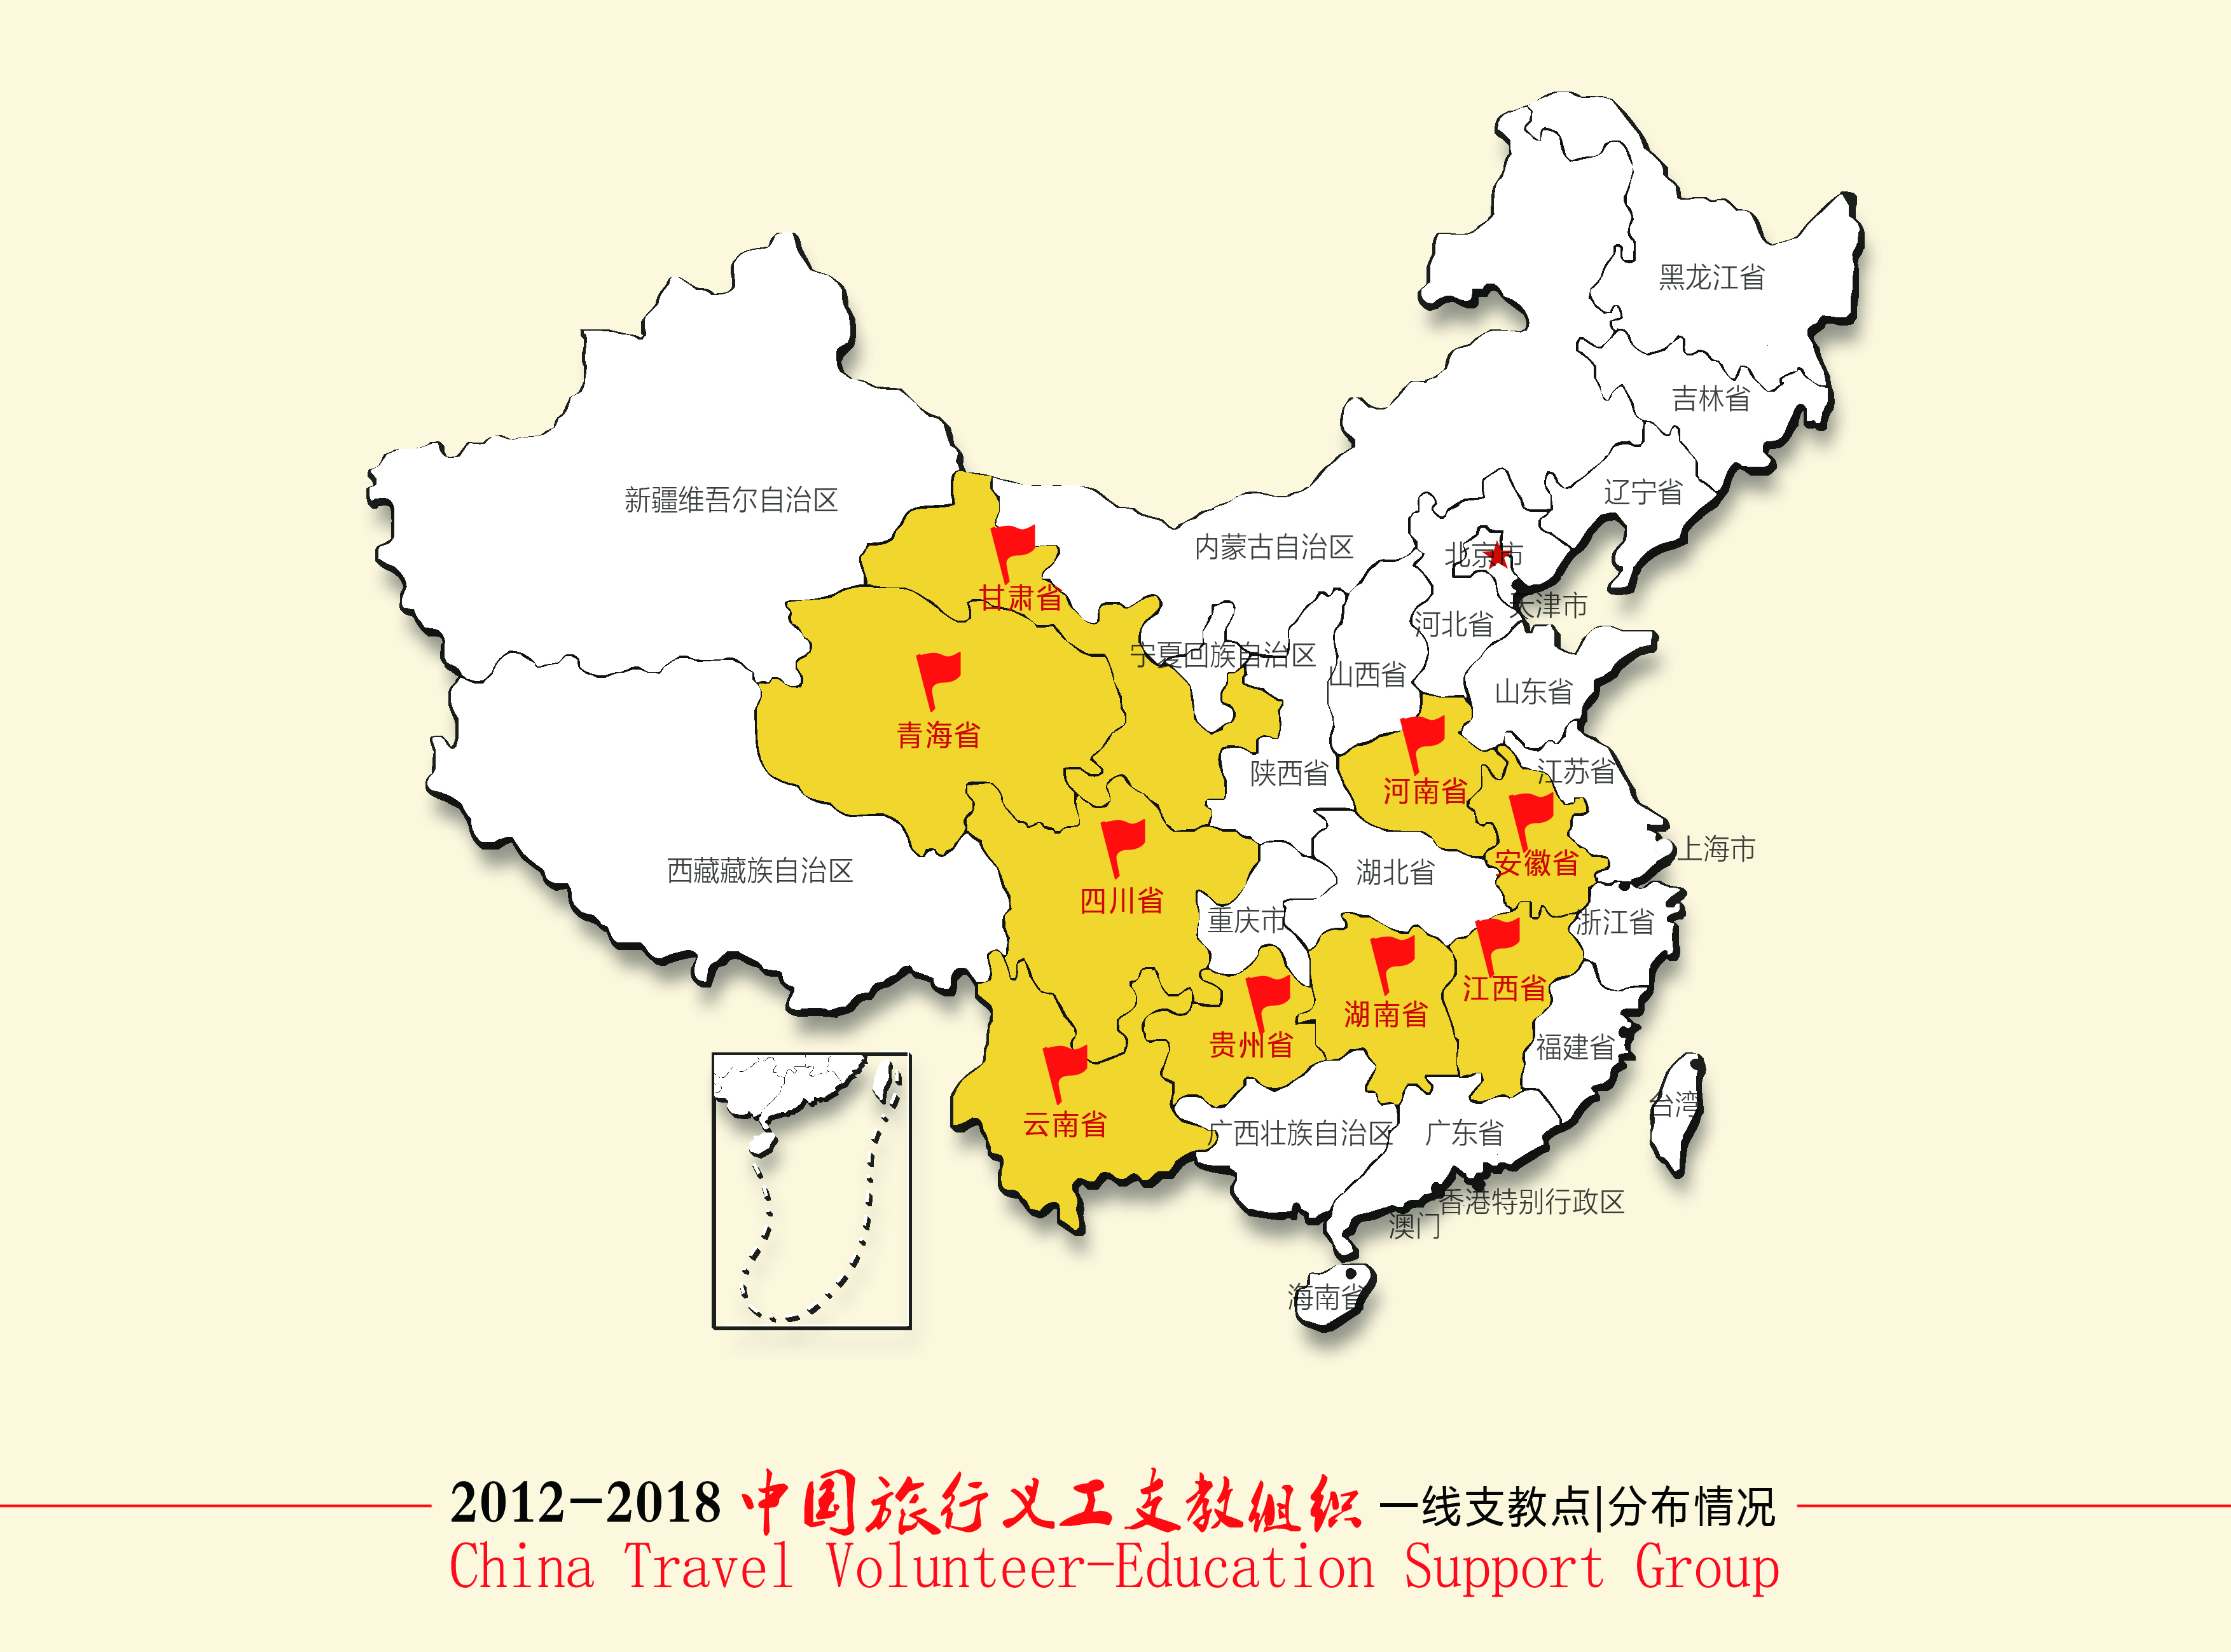 中國旅行義工支教組織